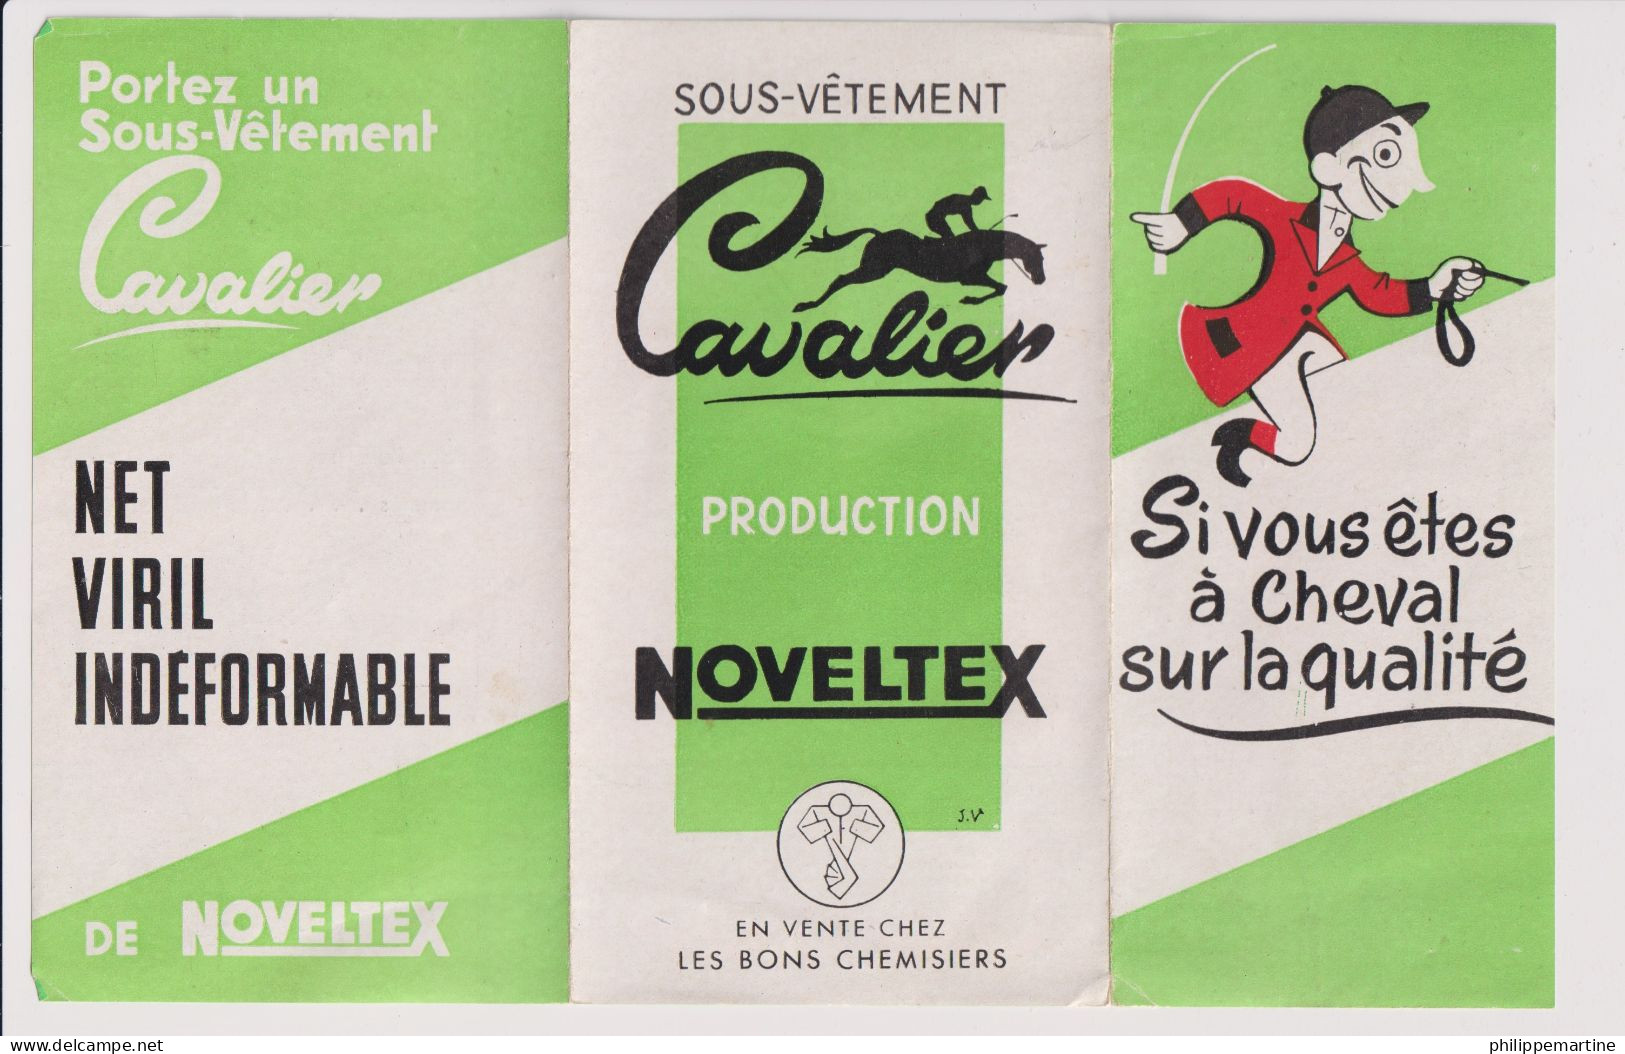 Dépliant Sous-vêtement Cavalier - Production Noveltex - Advertising